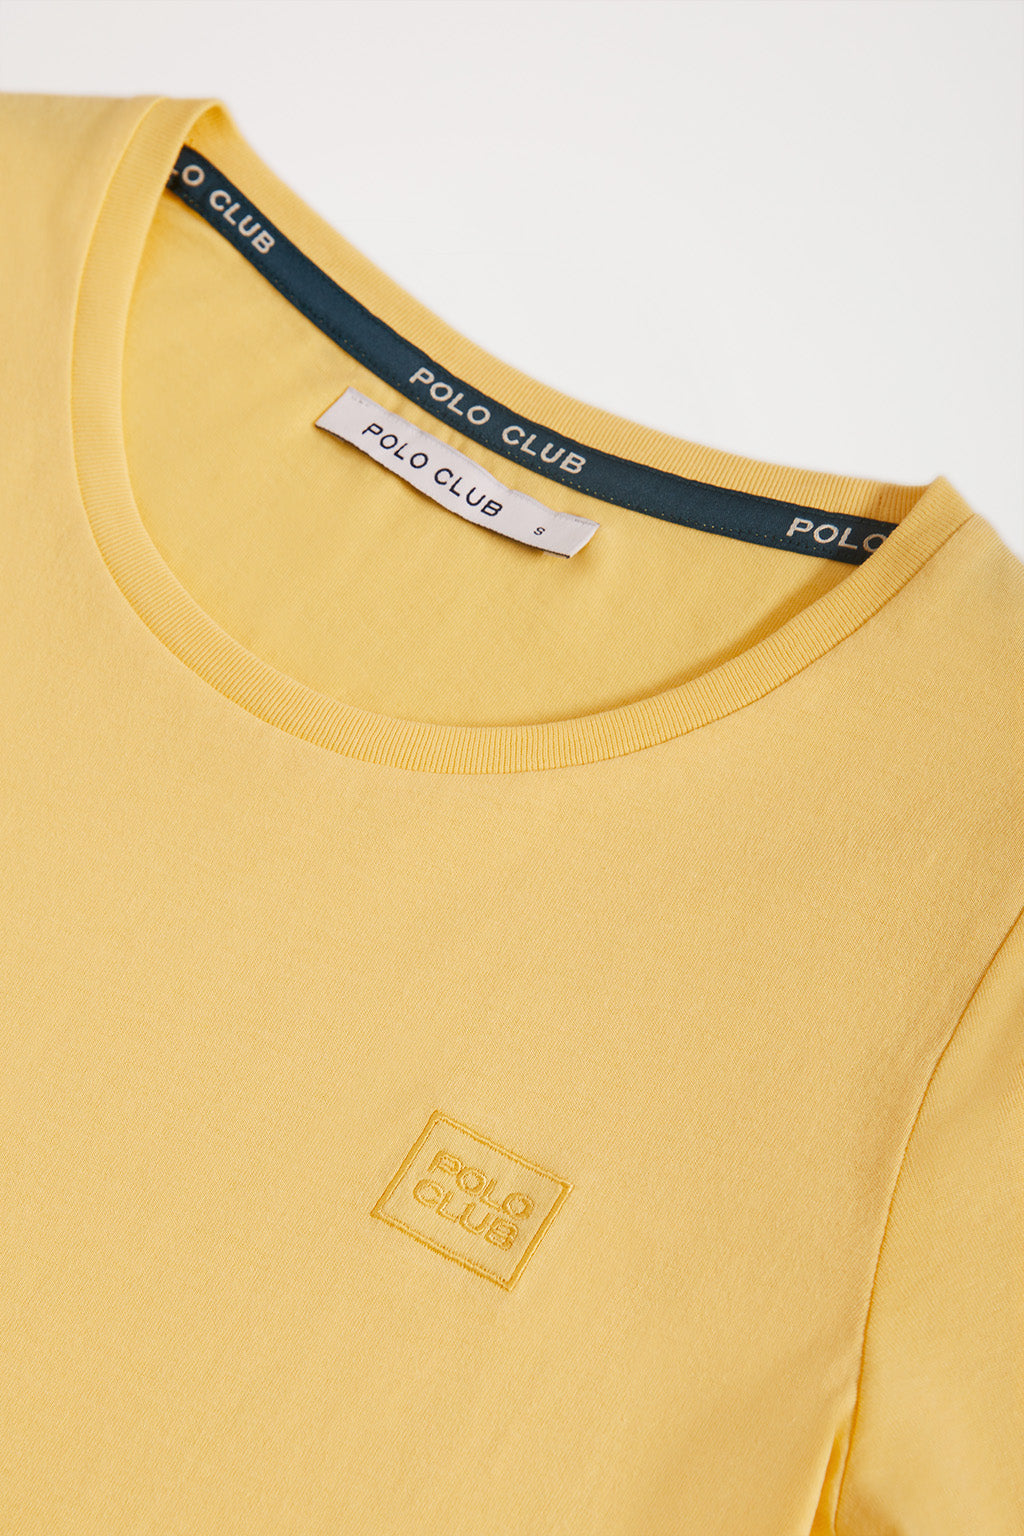 Camiseta amarilla con pequeño logo bordado – Polo Club